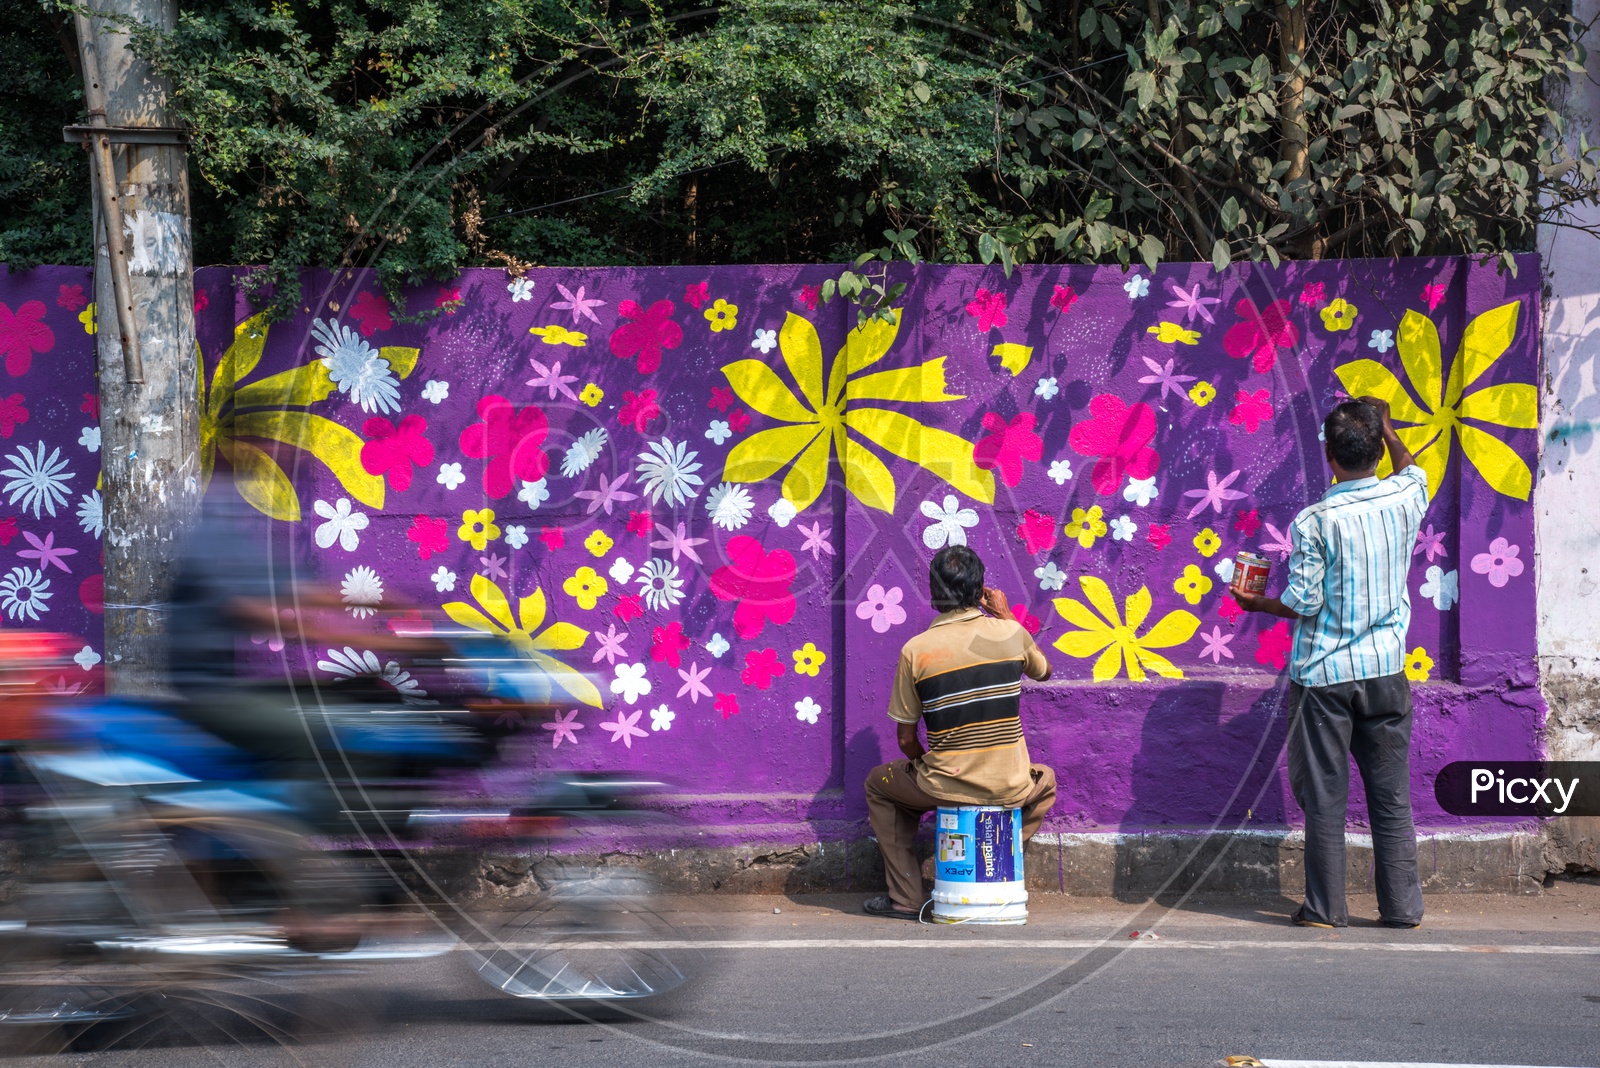 Wall Arts in MG Road, Vijayawada.